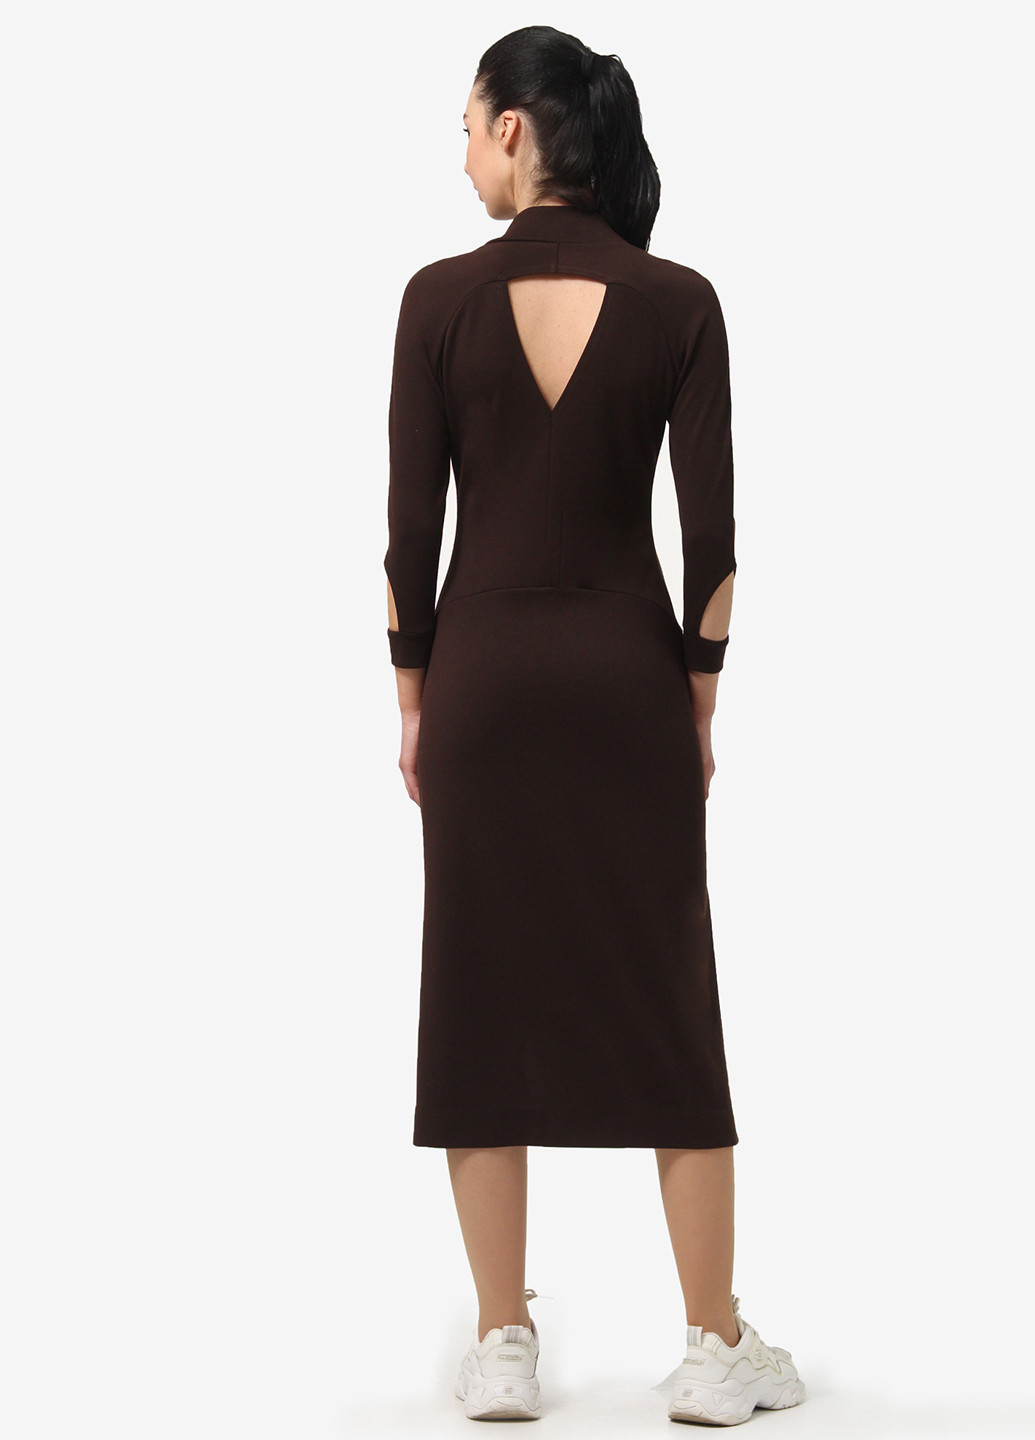 Темно-коричневое кэжуал платье футляр Anette однотонное